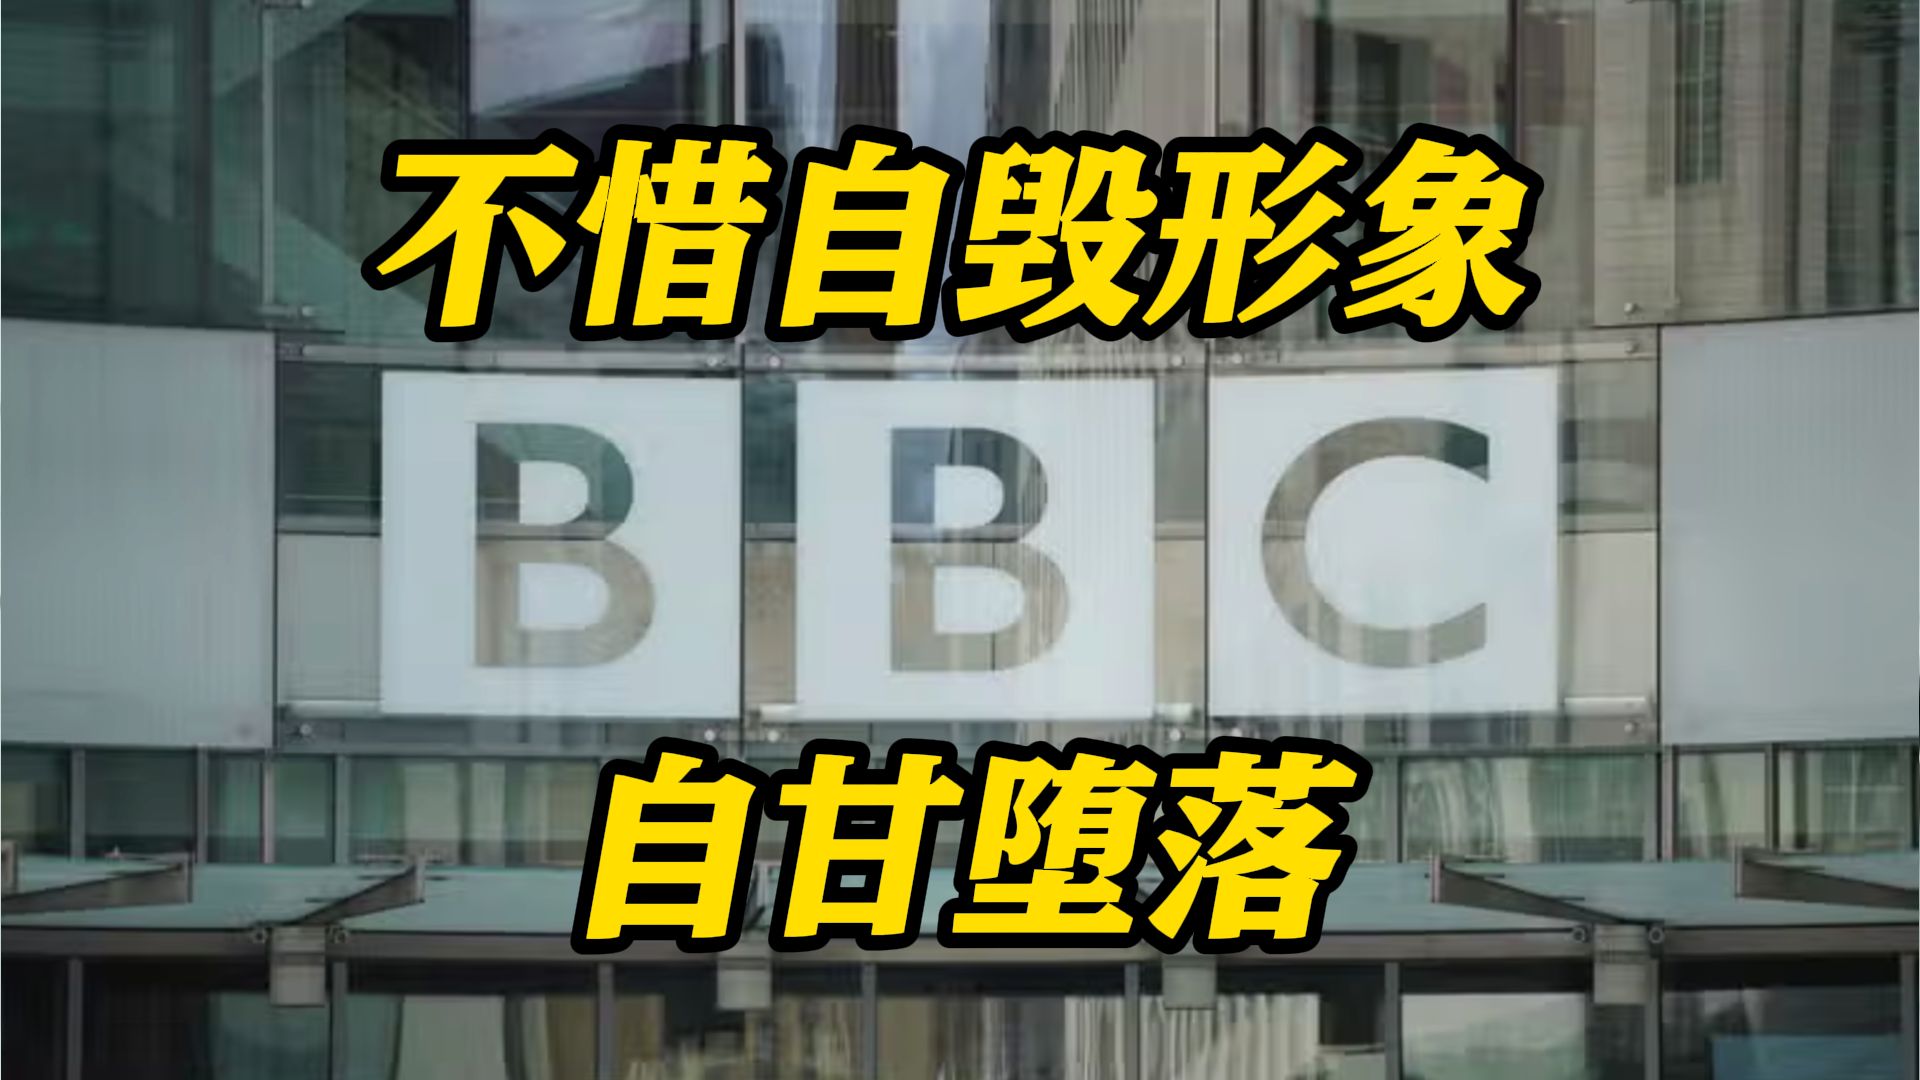 采访被完全曲解！台湾老师区桂芝怒批BBC：太失望！为对付所谓